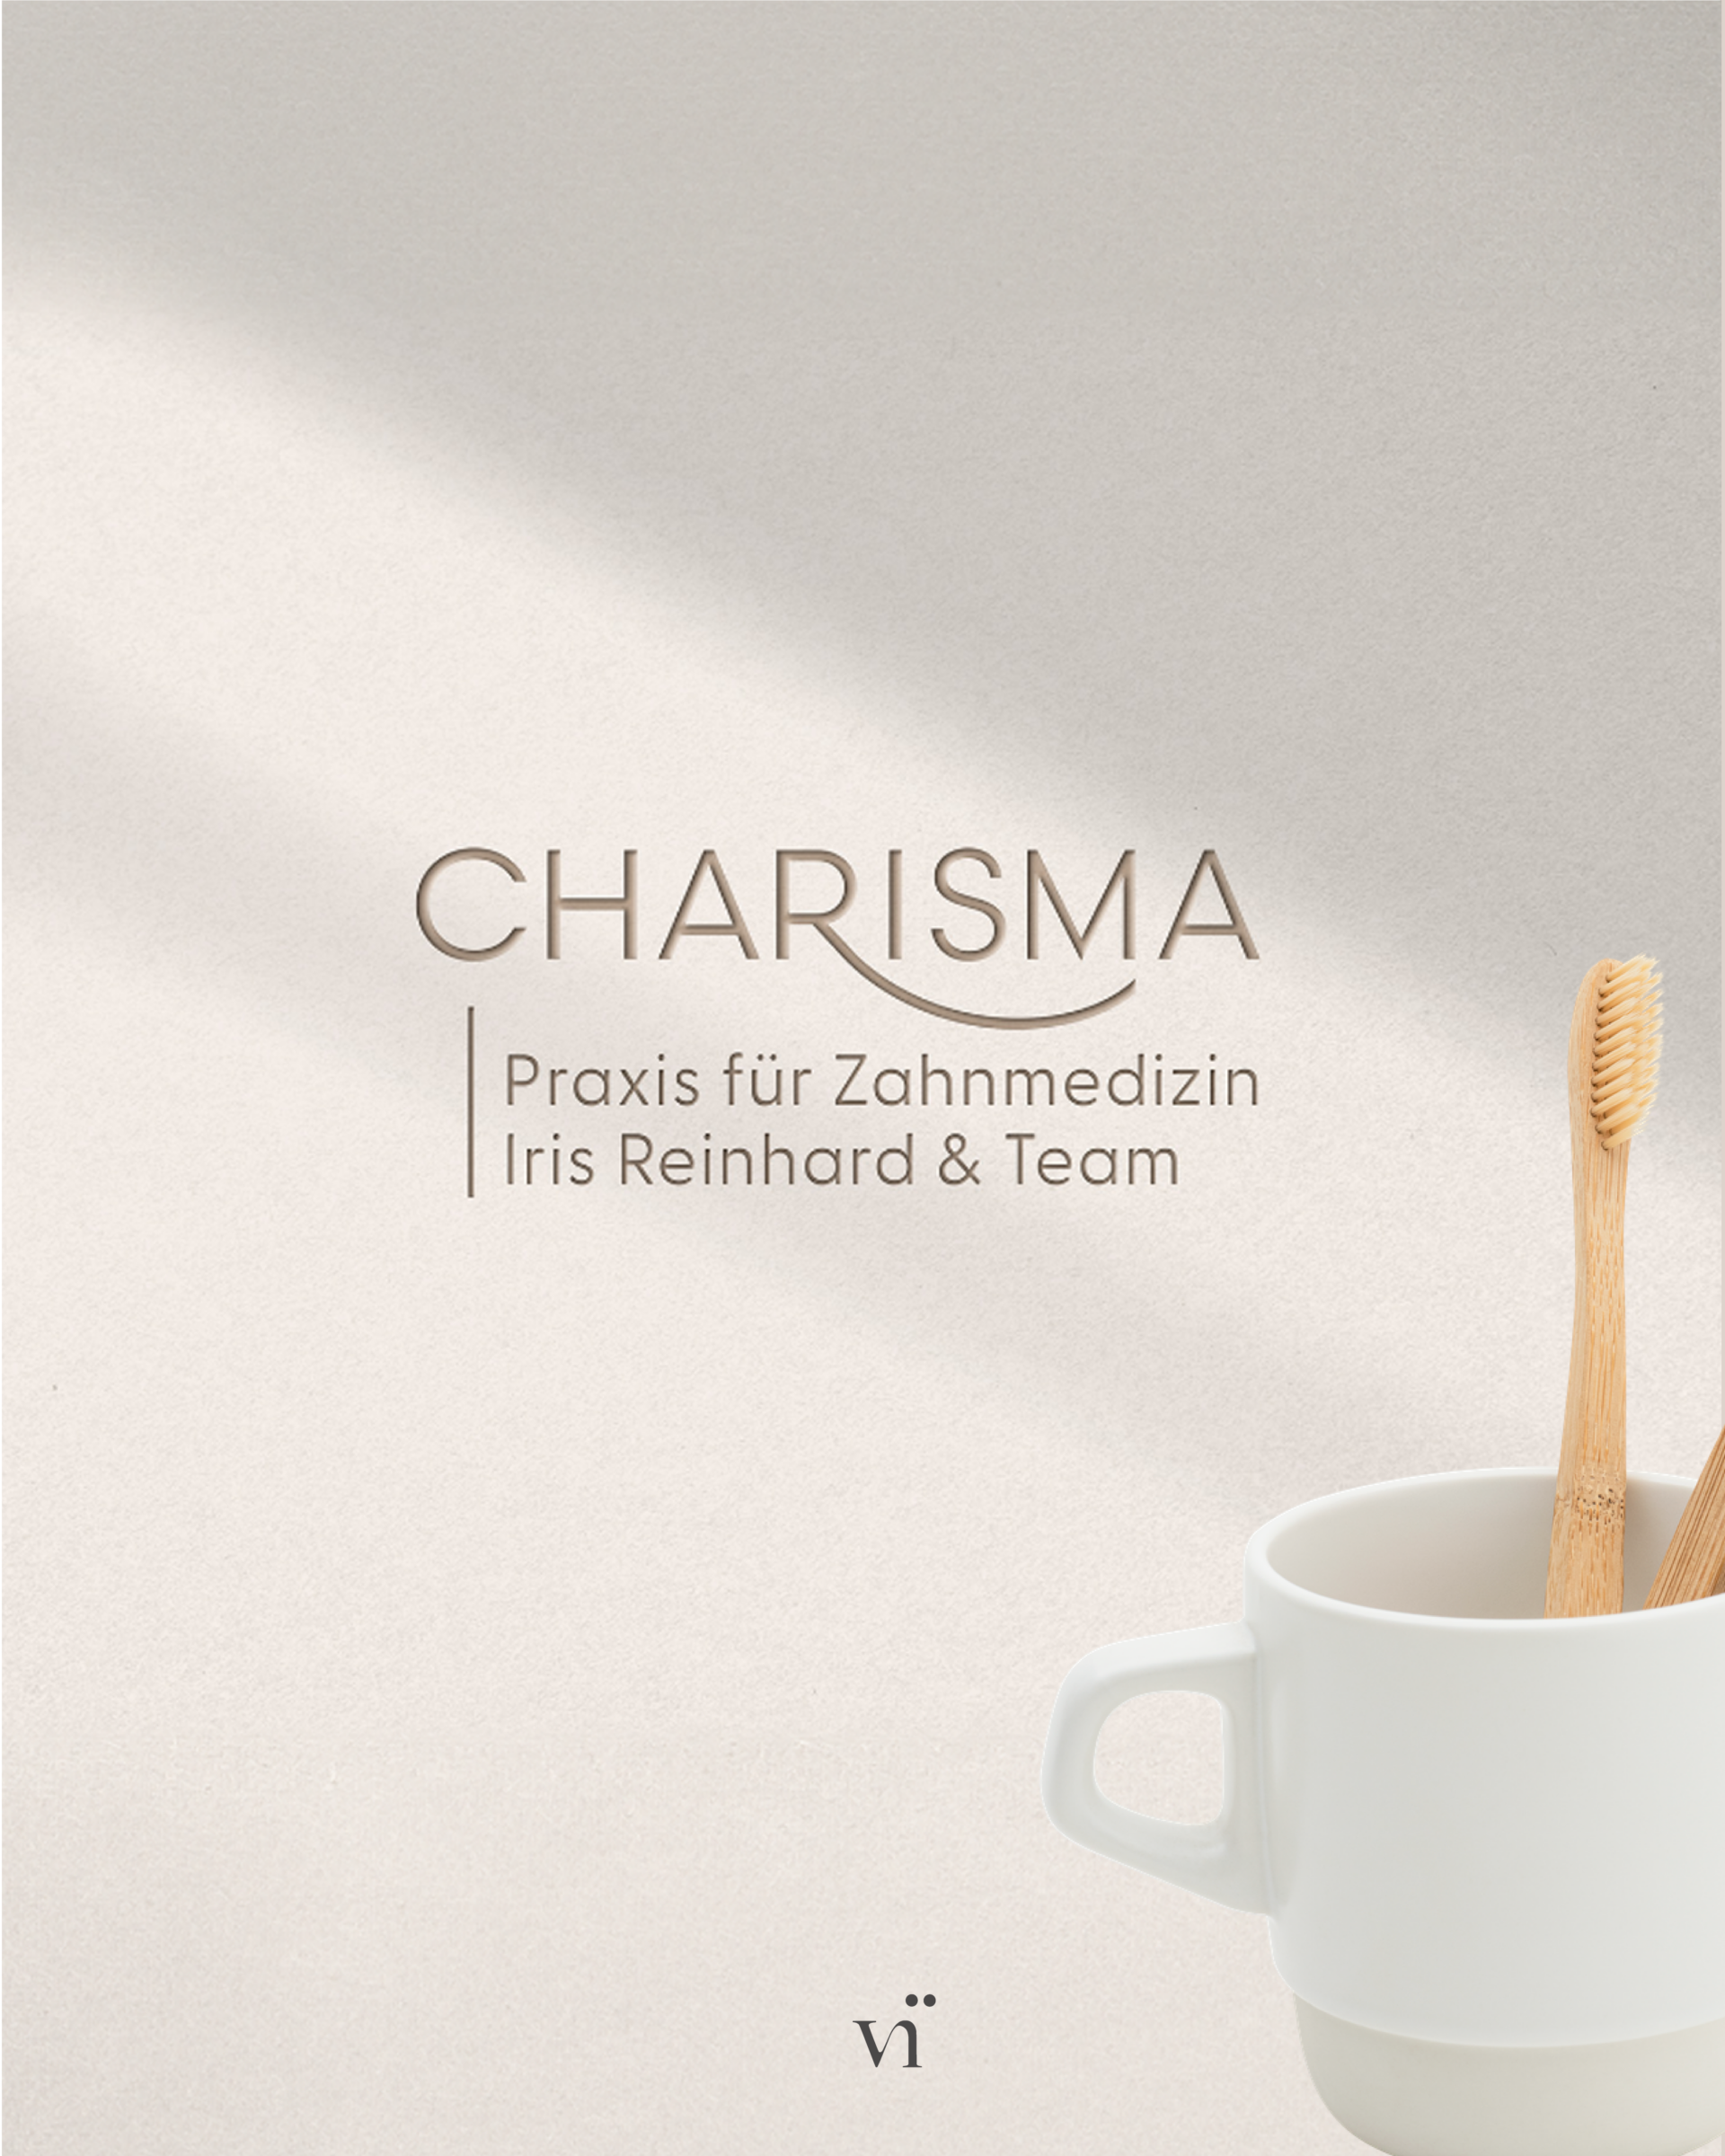 charisma_Zeichenfläche 1 Kopie